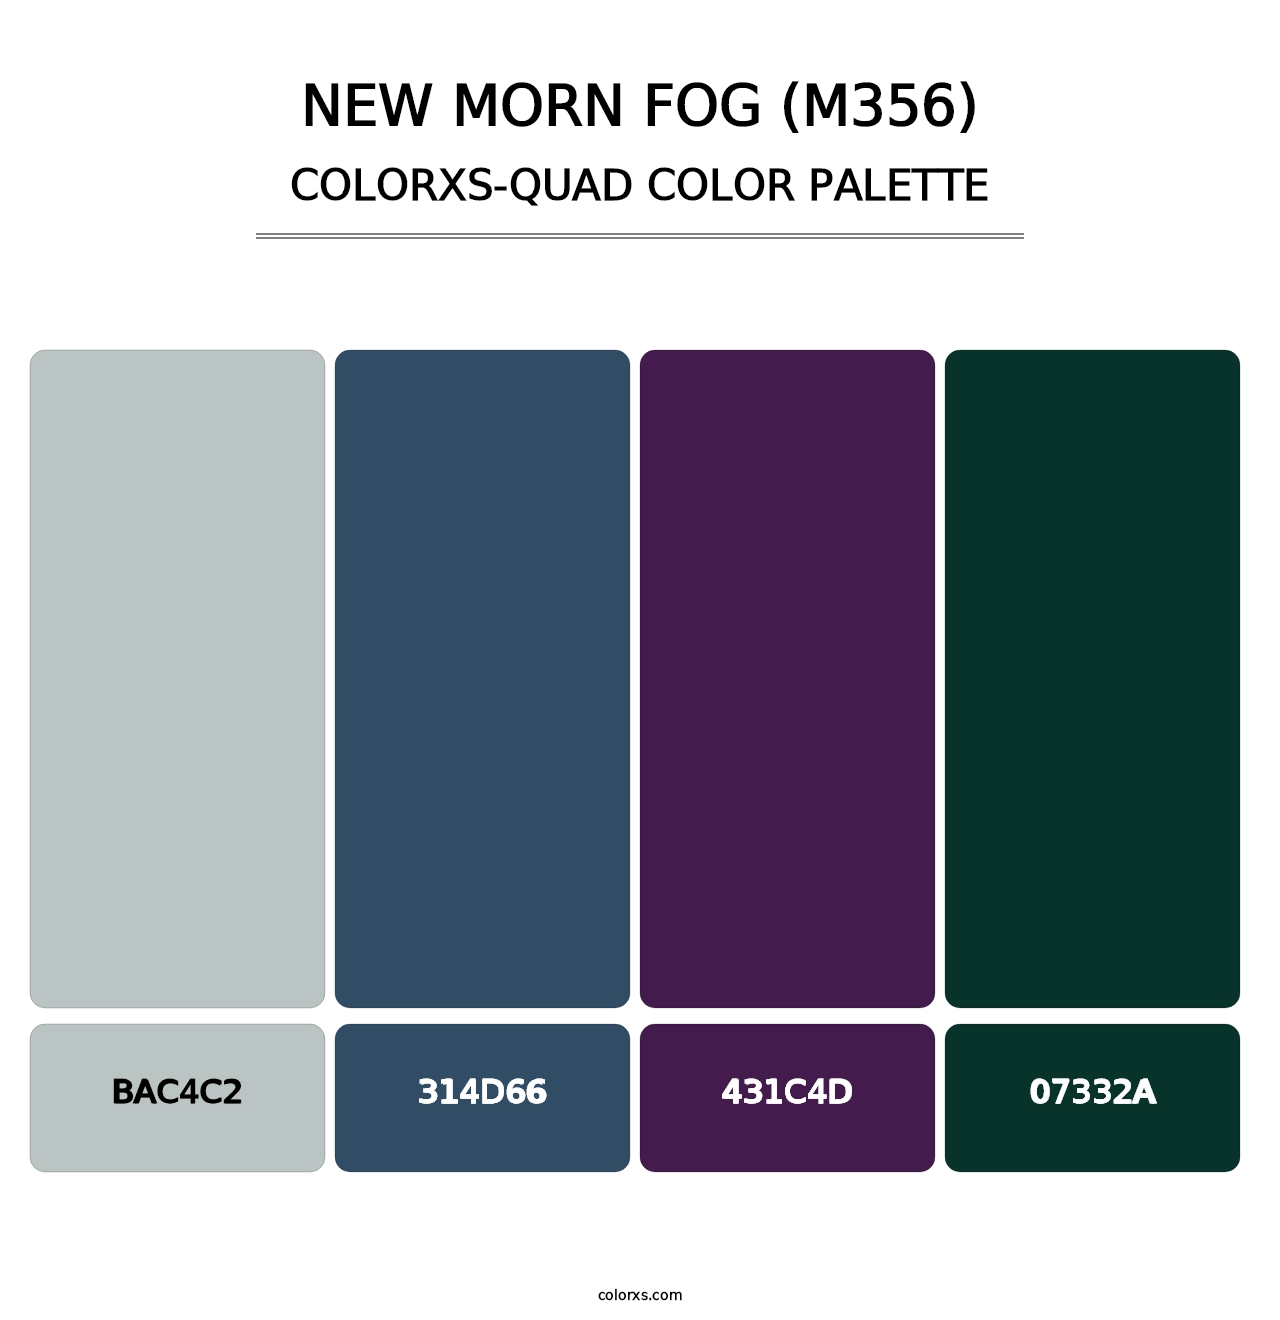 New Morn Fog (M356) - Colorxs Quad Palette